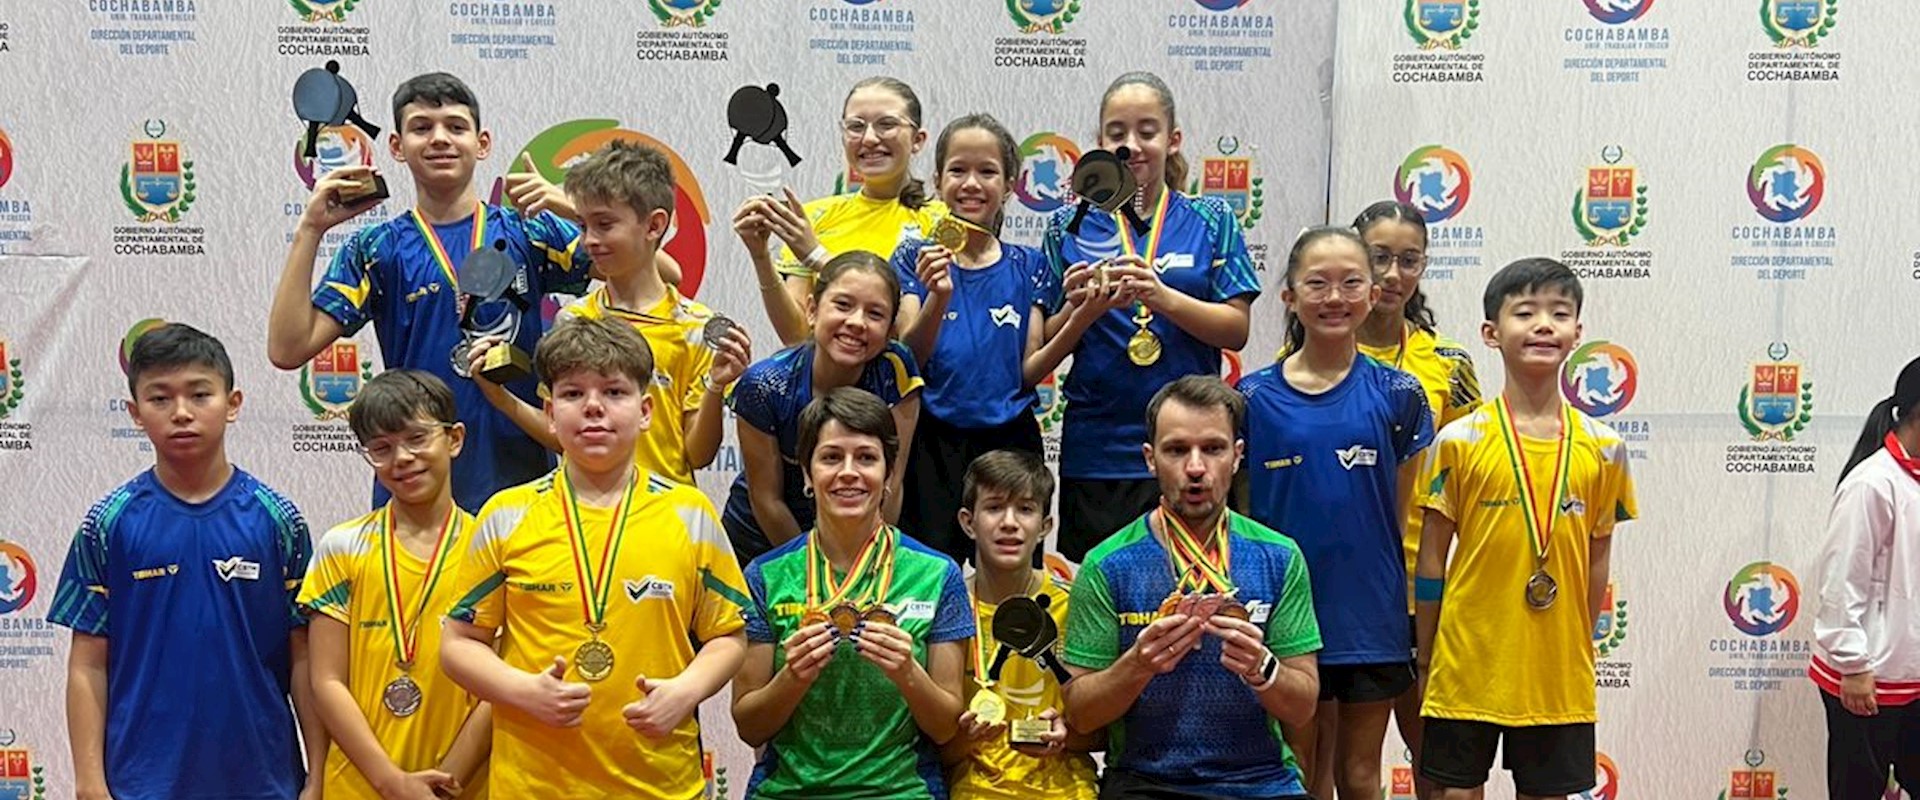 Brasil conquista dois ouros, duas pratas e três bronzes na disputa por equipes do Campeonato Sul-Americano Sub-11 e Sub-13